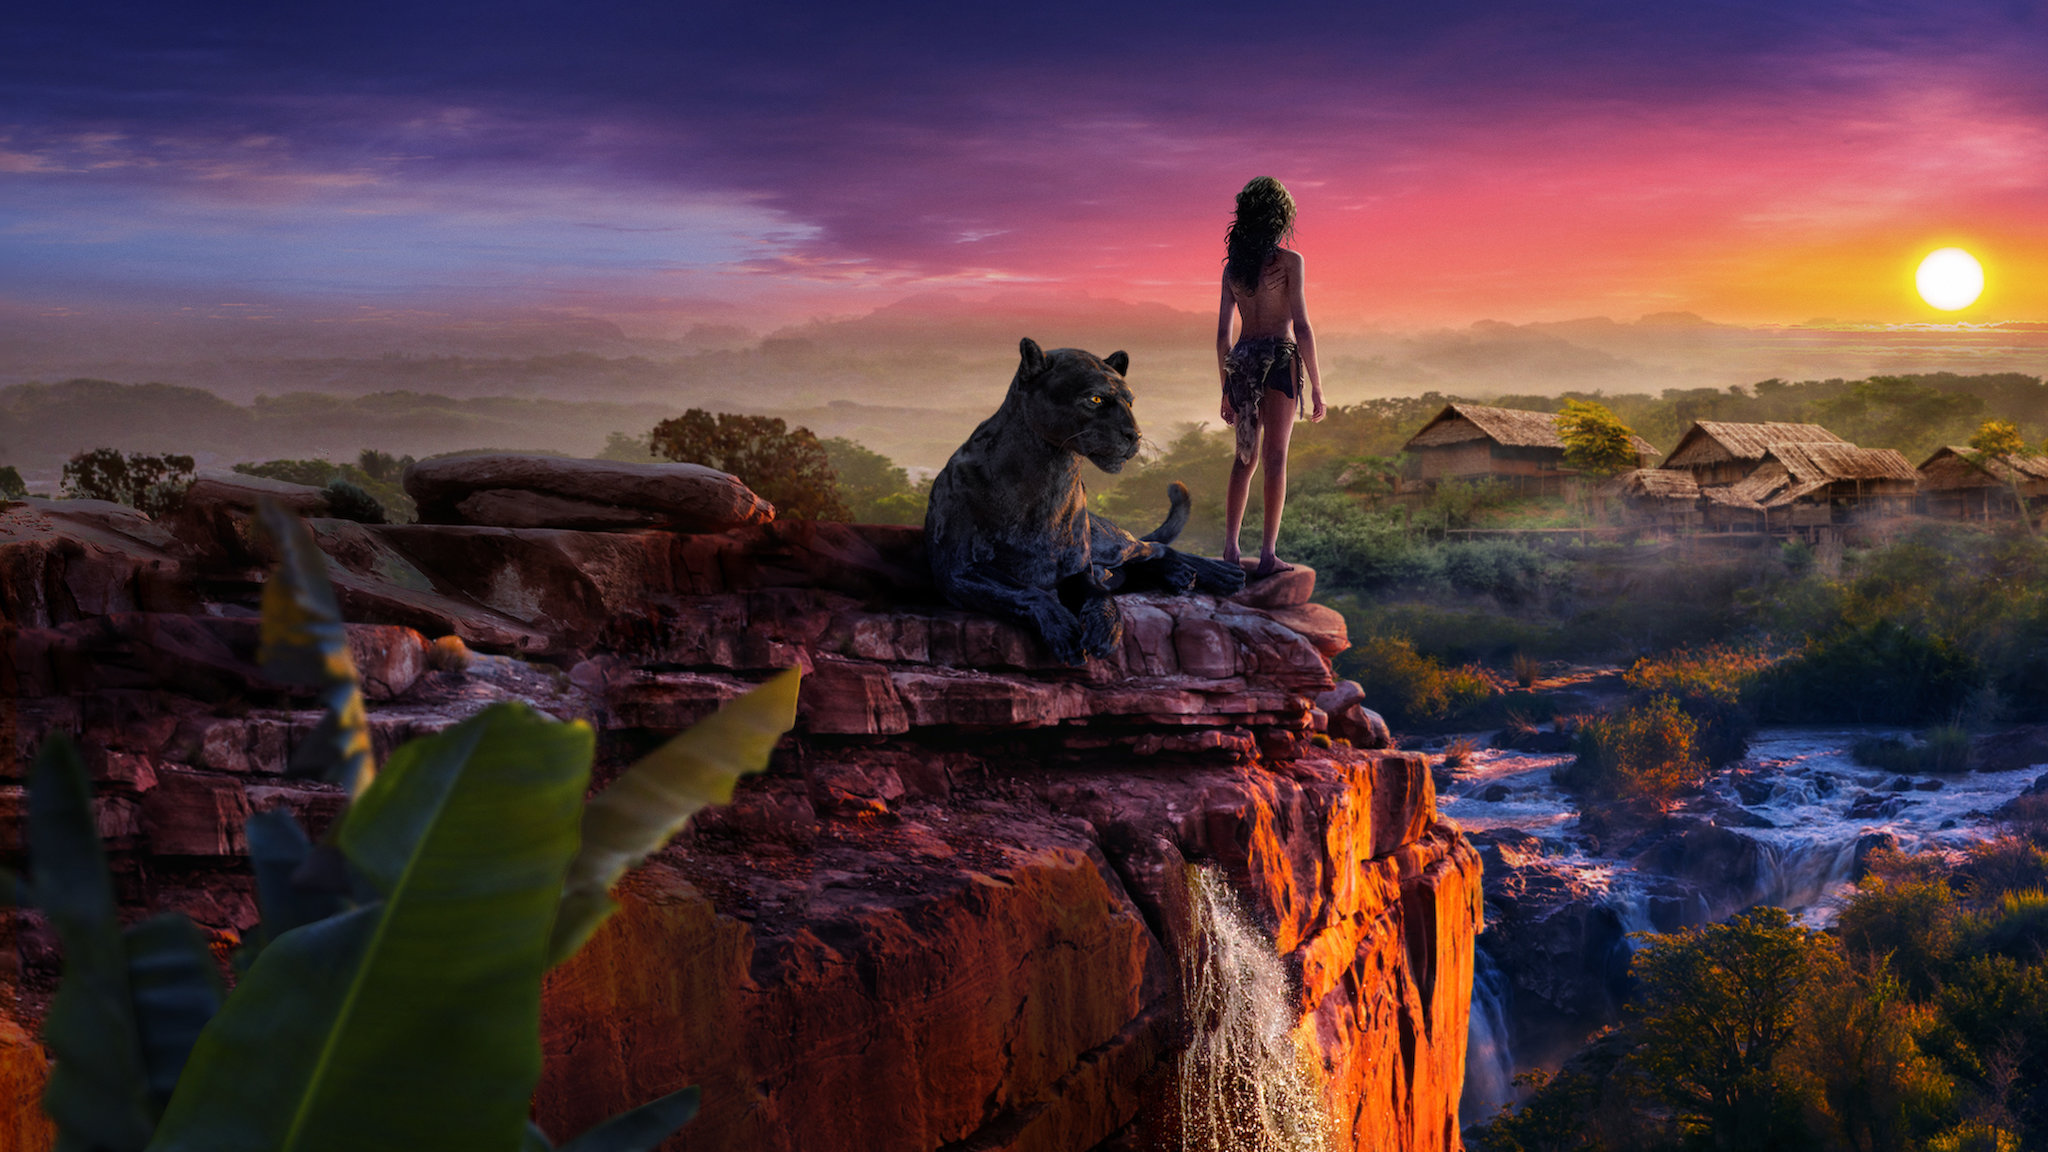 Descargar fondos de escritorio de Mowgli: La Leyenda De La Selva HD